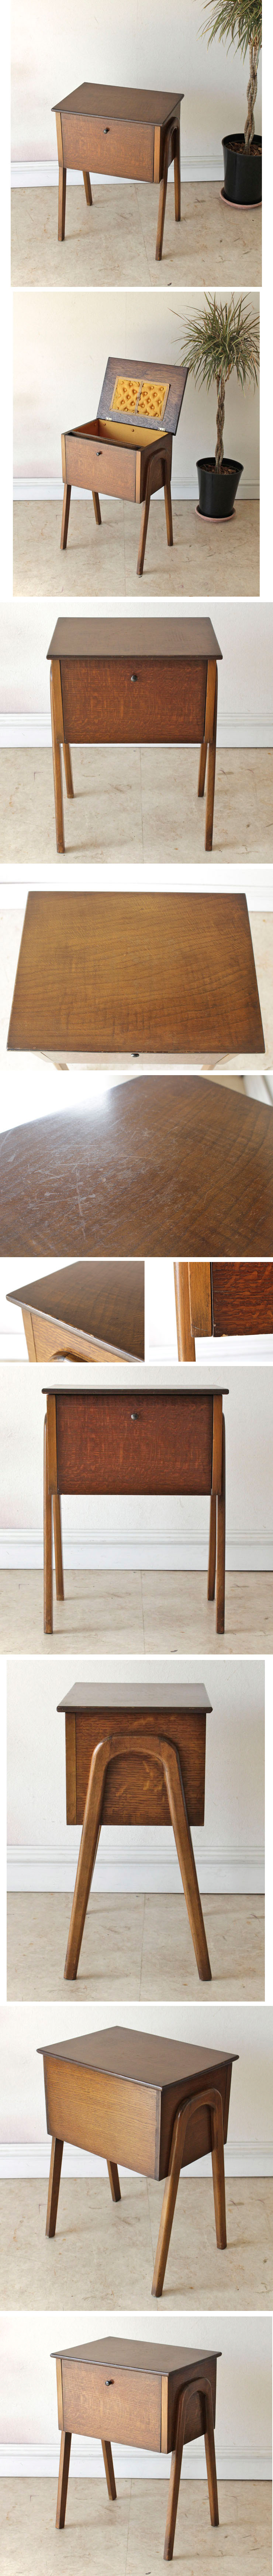 イギリス・ソーイングボックス・裁縫箱・サイドテーブル・ハンドメイド・クラフト・ビンテージ・アンティーク